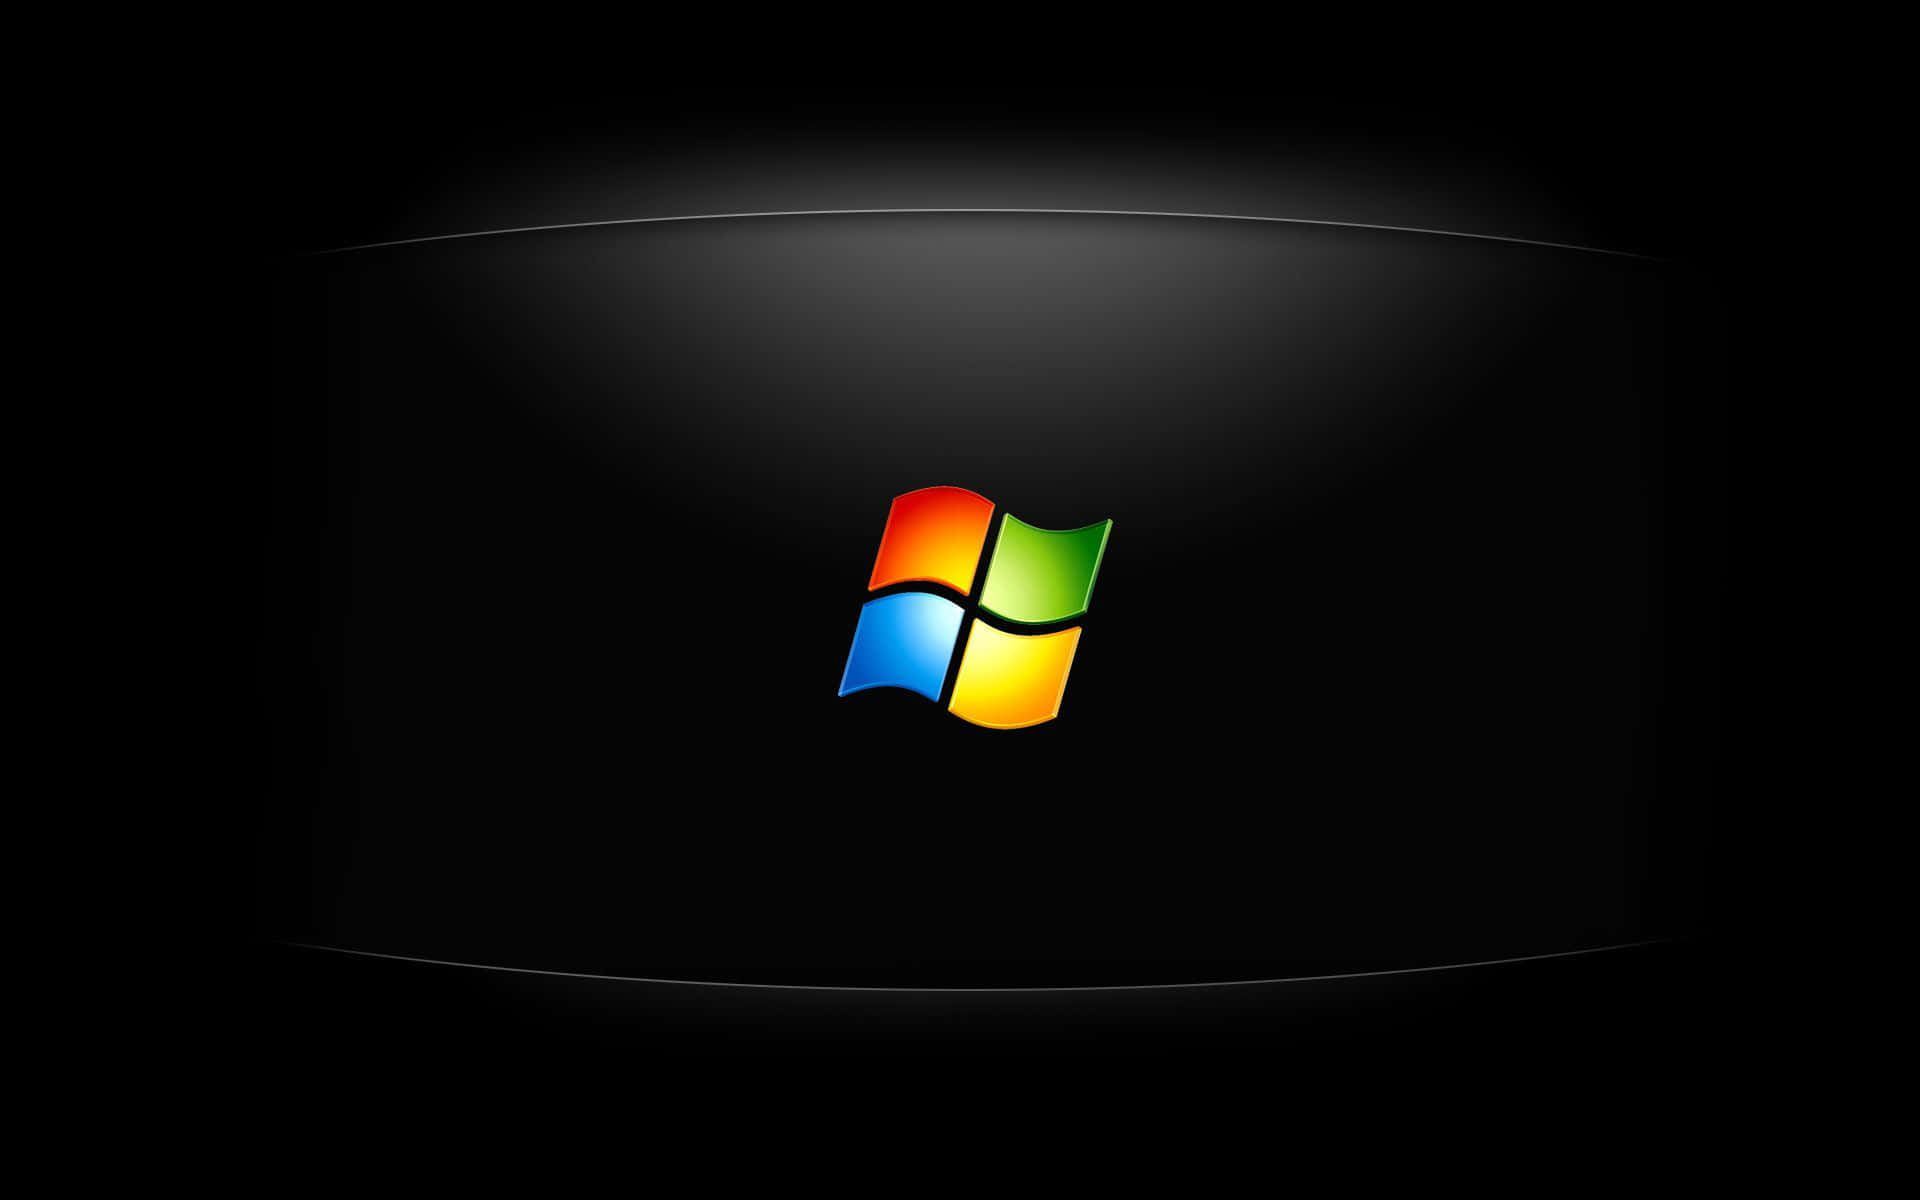 Mejorfondo De Pantalla Para Escritorio De Pc Con El Logo De Windows Xp